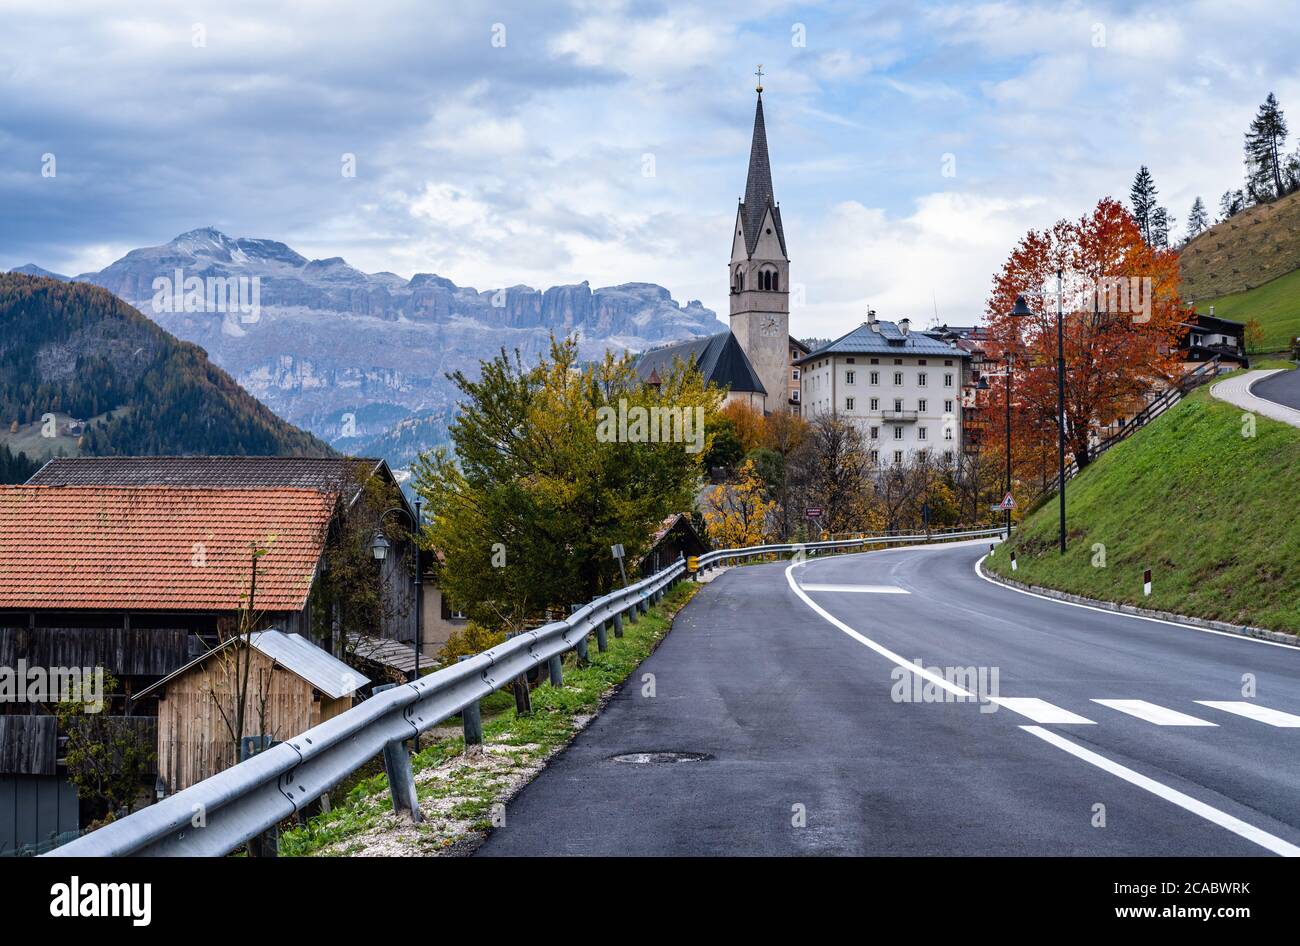 Autumn alpine Dolomites scene, Sudtirol, Italy. Peaceful village and old church view from road, Localita Soraru, Livinallongo del Col di Lana, Belluno Stock Photo